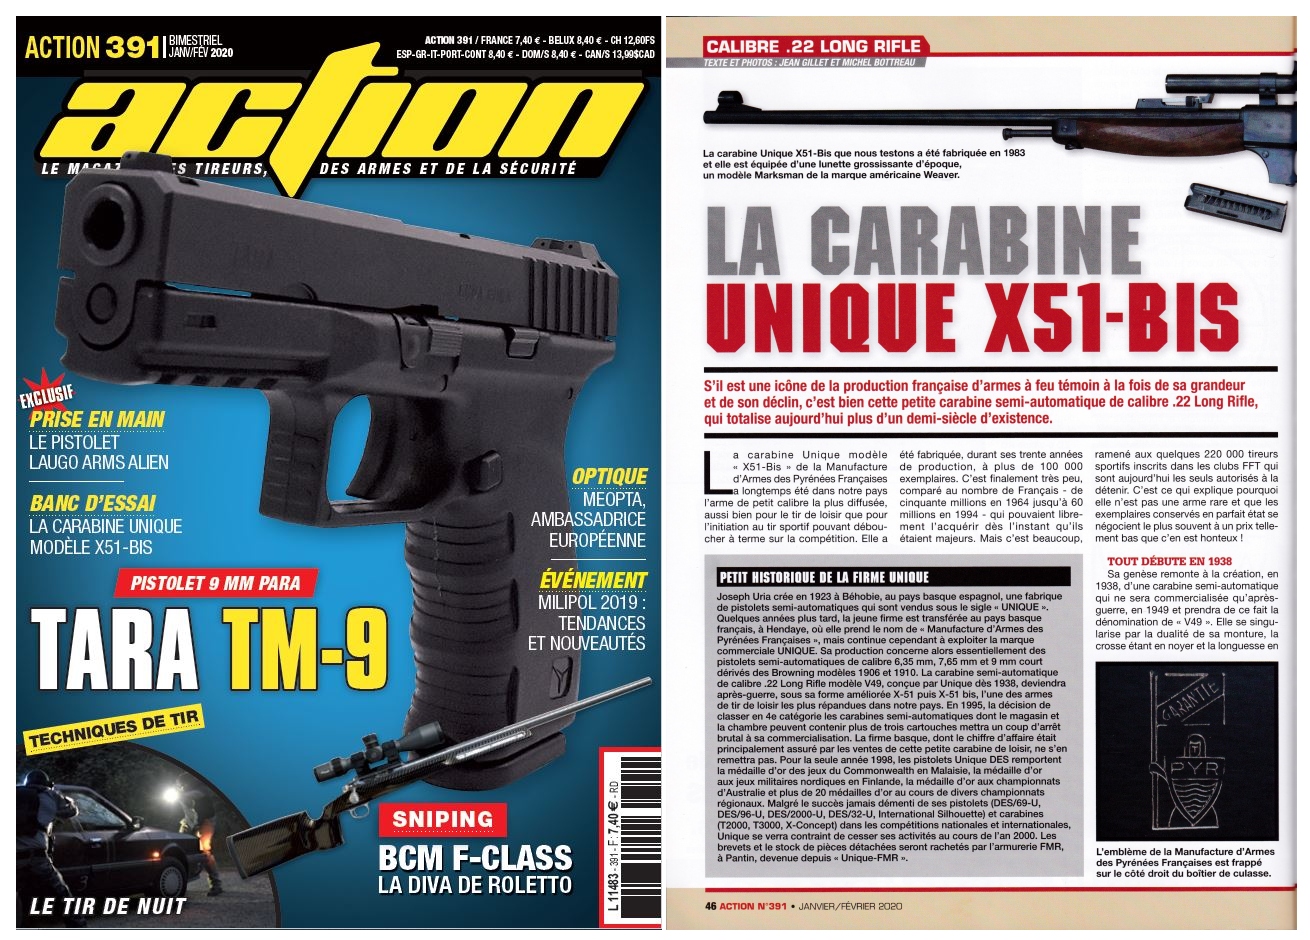 Le banc d’essai de la carabine Unique modèle X51-Bis a été publié sur 5 pages dans le magazine Action n°391 (janvier-février 2020). 